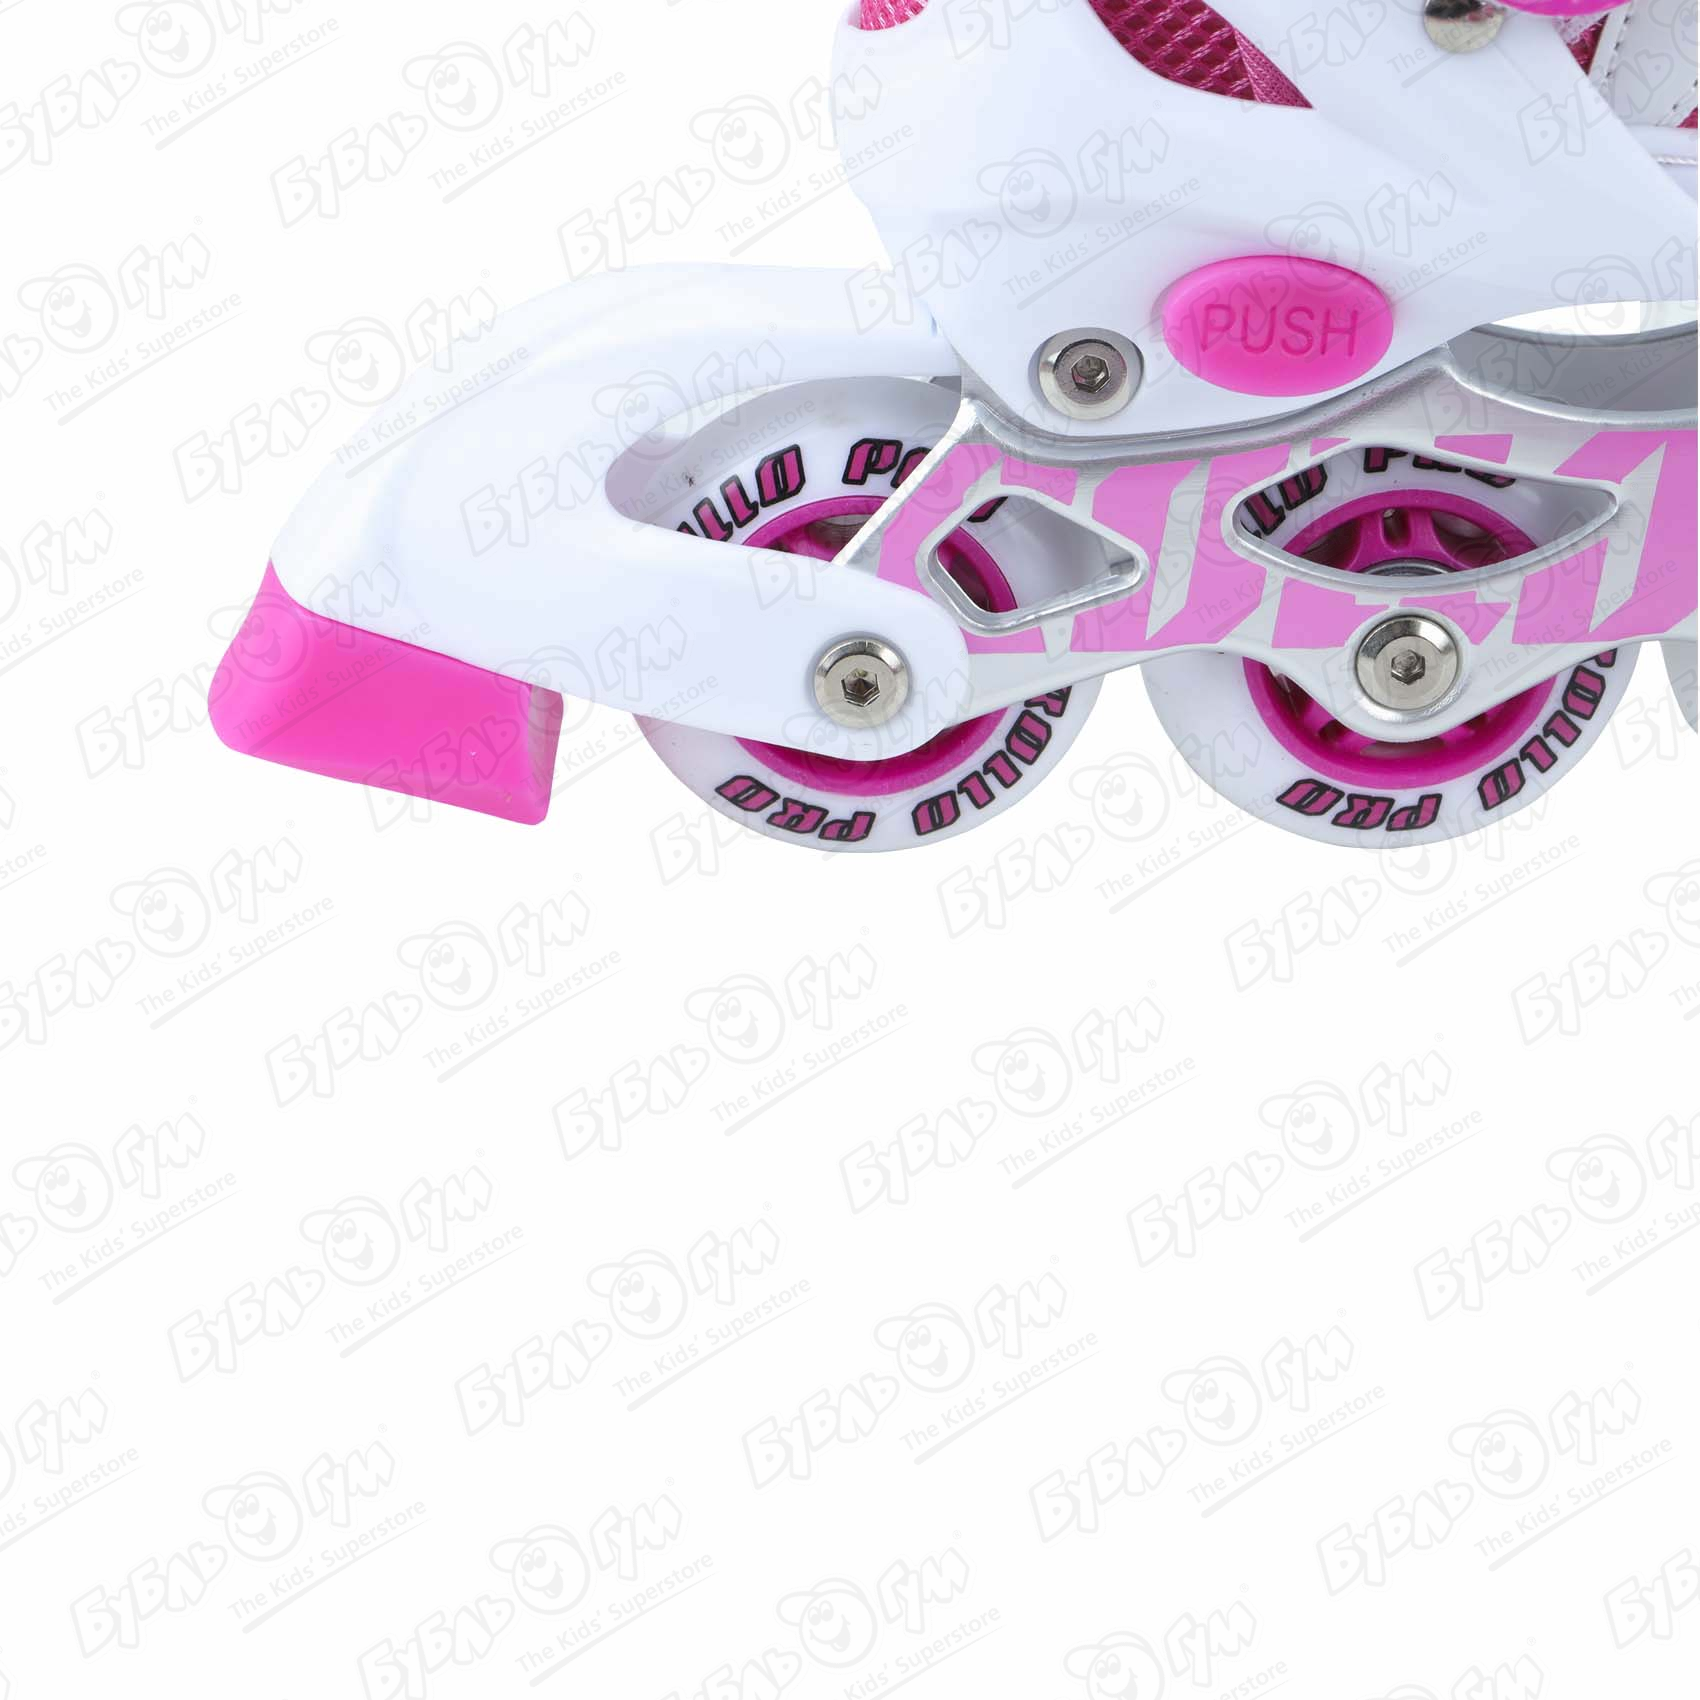 Коньки роликовые ROLLO PRO раздвижные  с липучкой розовые с белыми вставками - фото 7